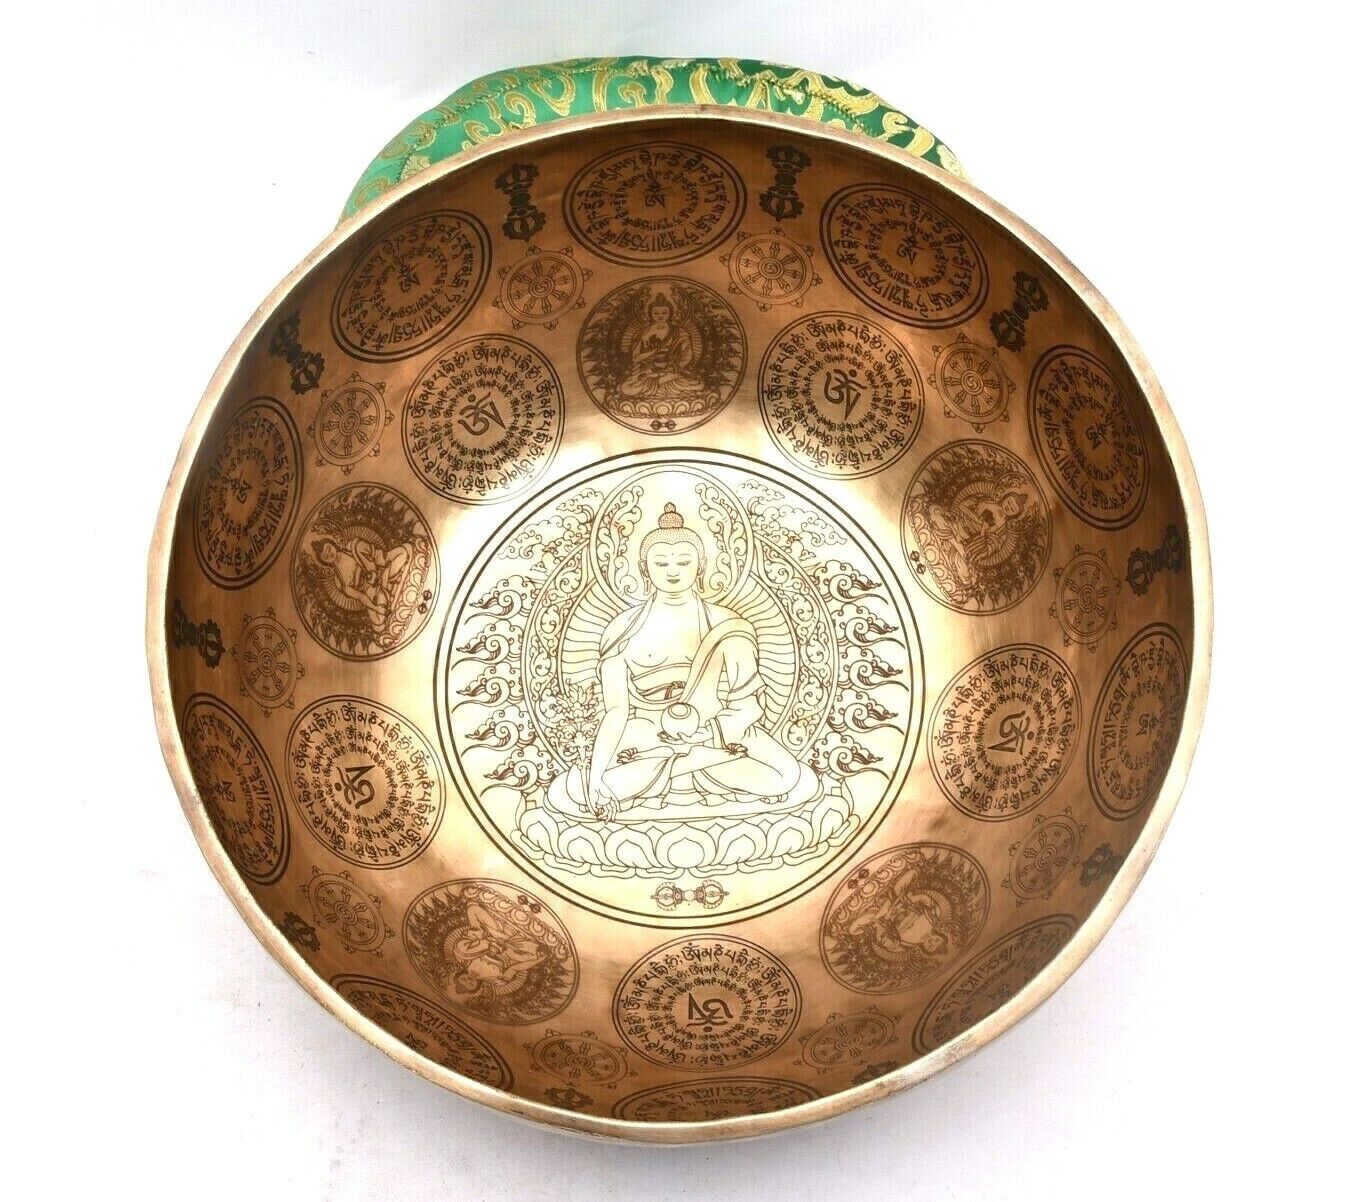 30 Cm Large Buddha Singing Bowl - Sound Healing Tibetan Singing Bowl -Meditation